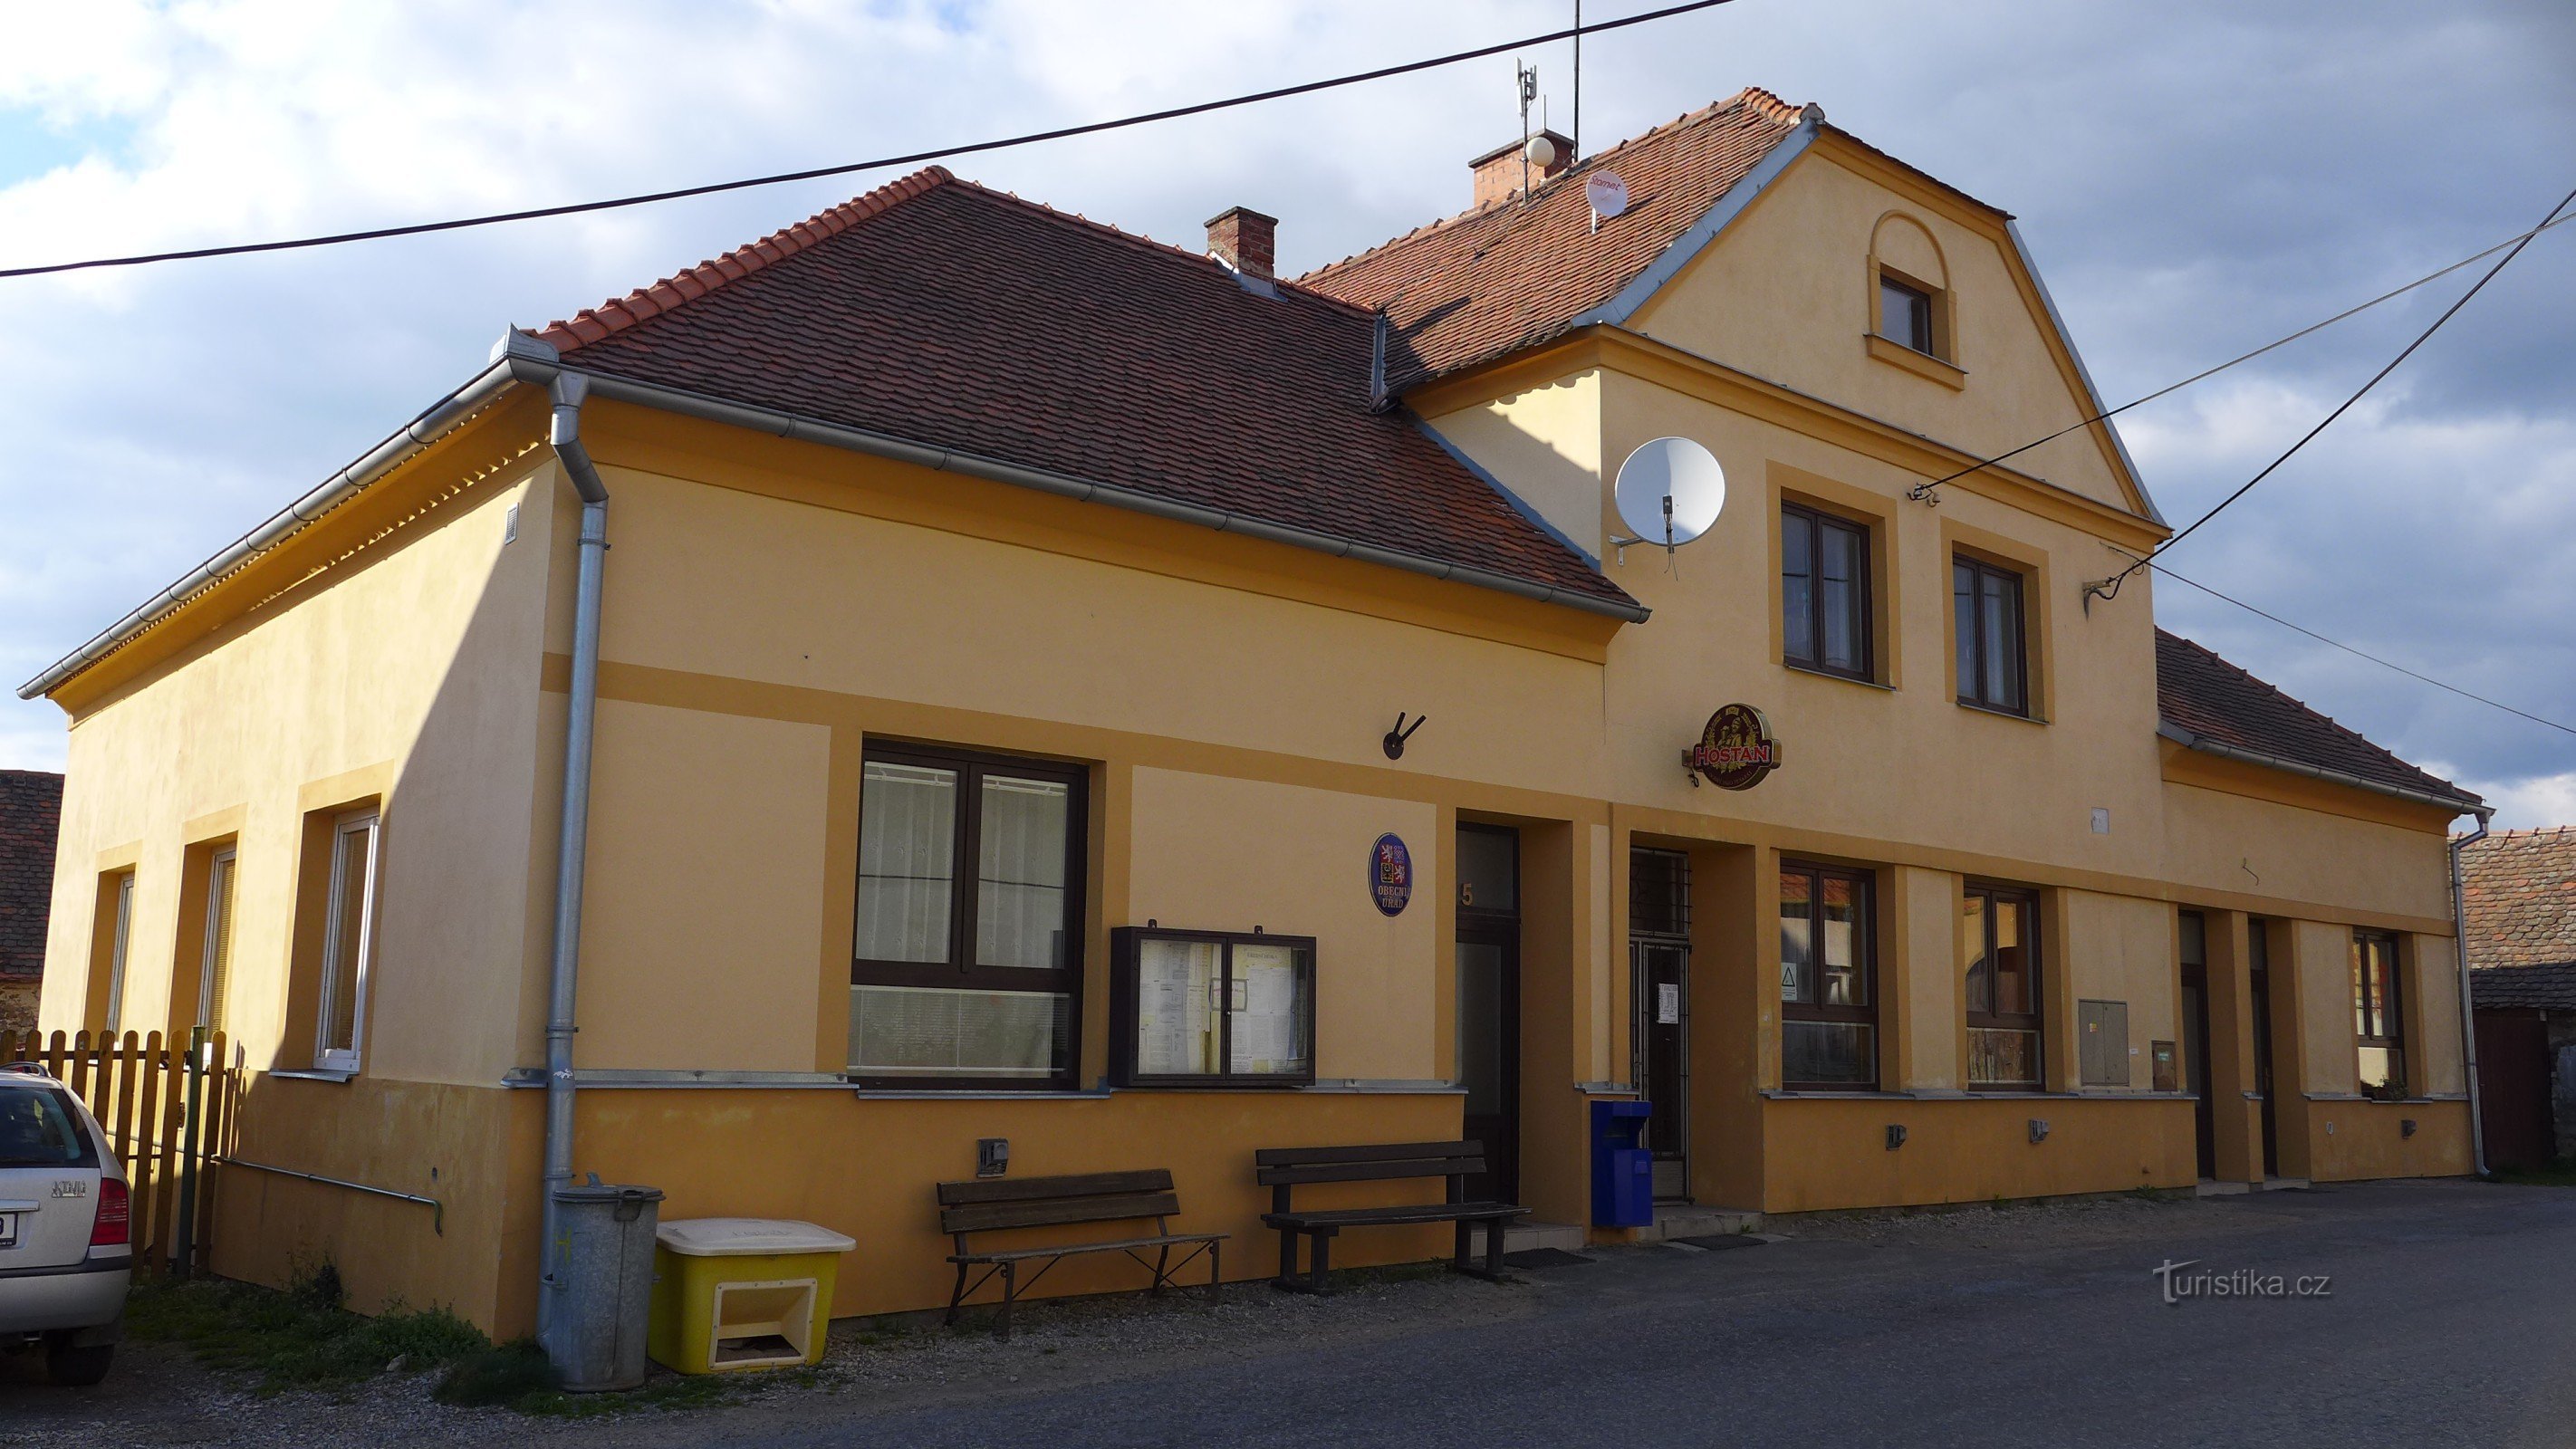 Újezd ​​​​- escritório municipal e restaurante